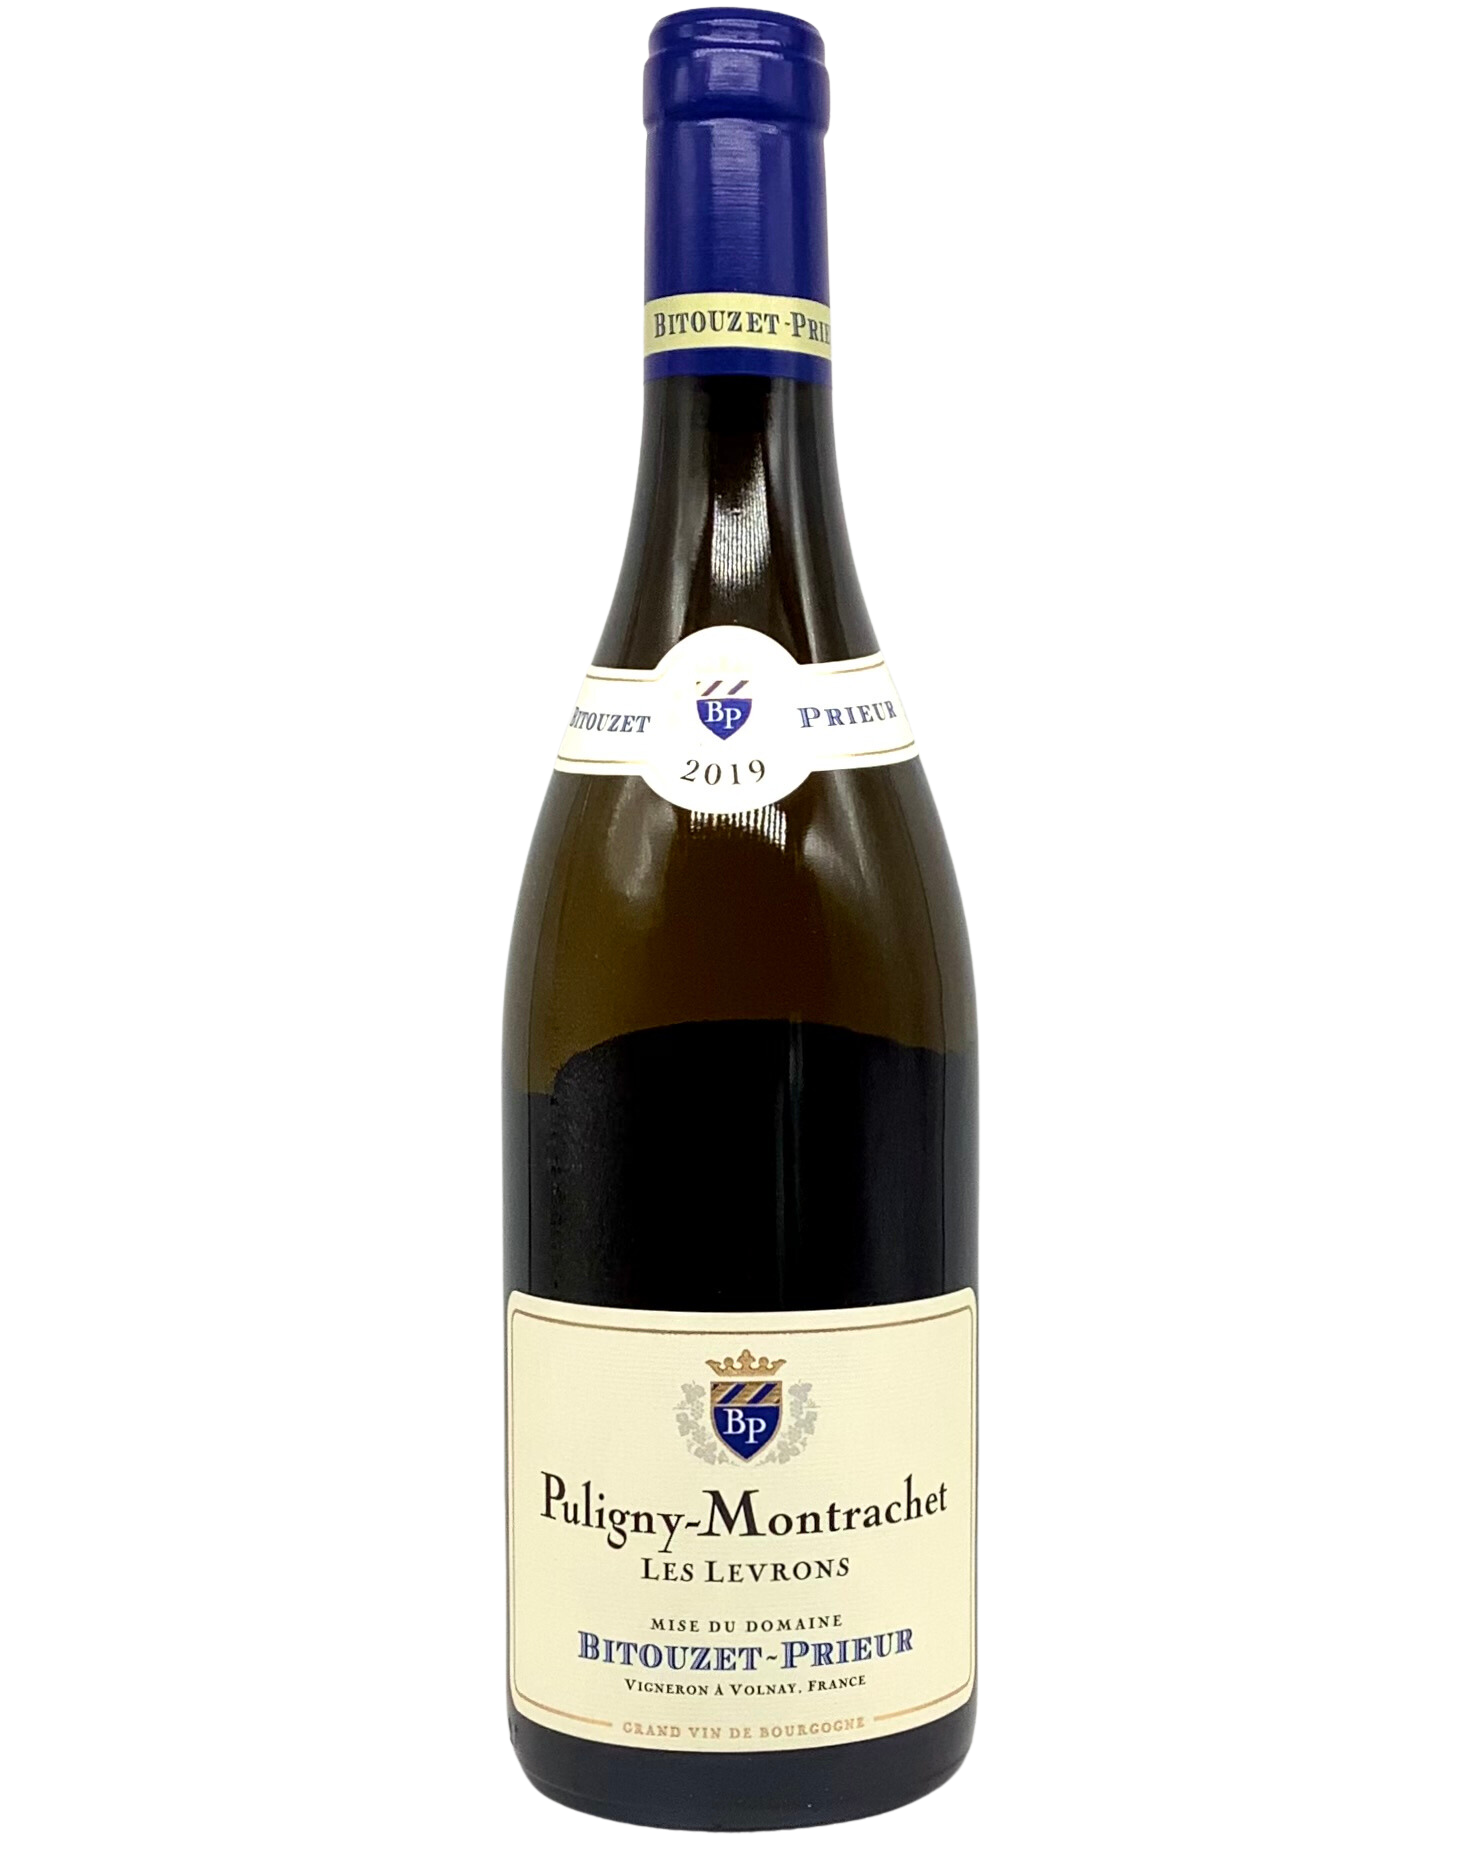 Bitouzet-Prieur, Chardonnay, Puligny-Montrachet "Les Levrons" Côte de Beaune, Burgundy, France 2019